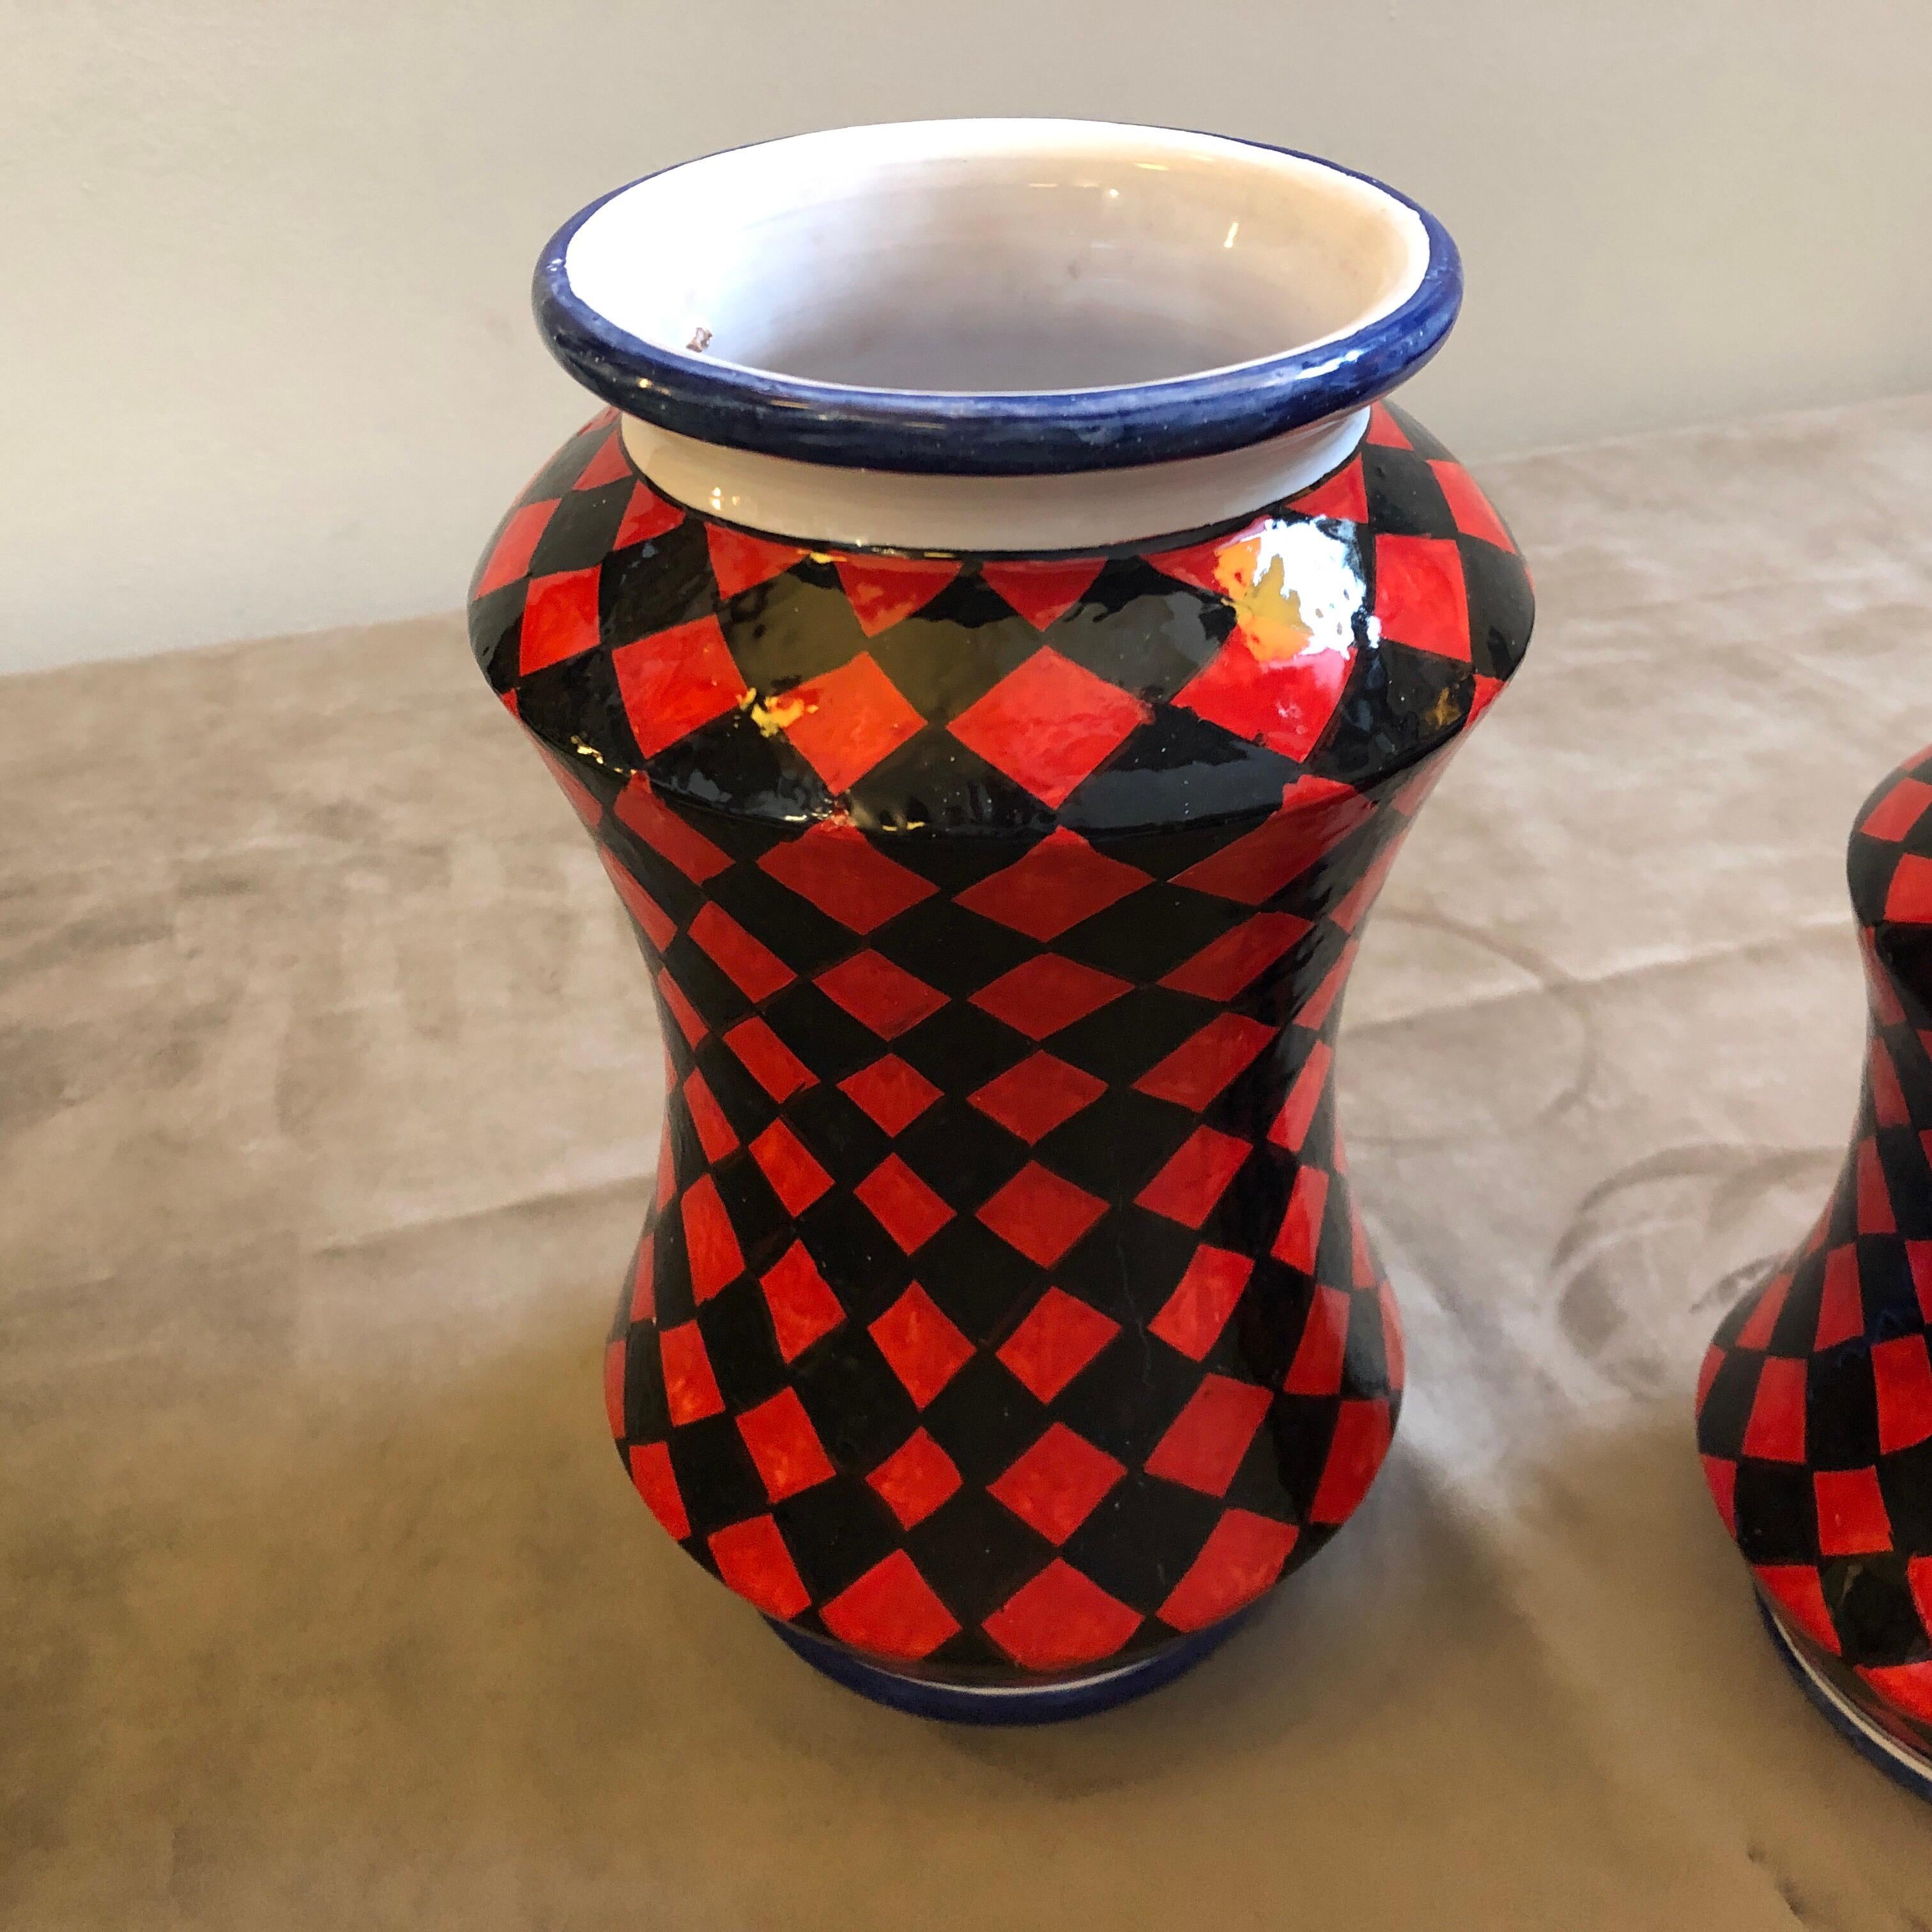 Drei handbemalte Terrakotta-Vasen aus Caltagirone, einer kleinen Stadt in Sizilien, die für ihre handgefertigten Keramiken berühmt ist. Es handelt sich um Unikate, die speziell für unser Geschäft hergestellt wurden und auf dem Boden signiert sind.